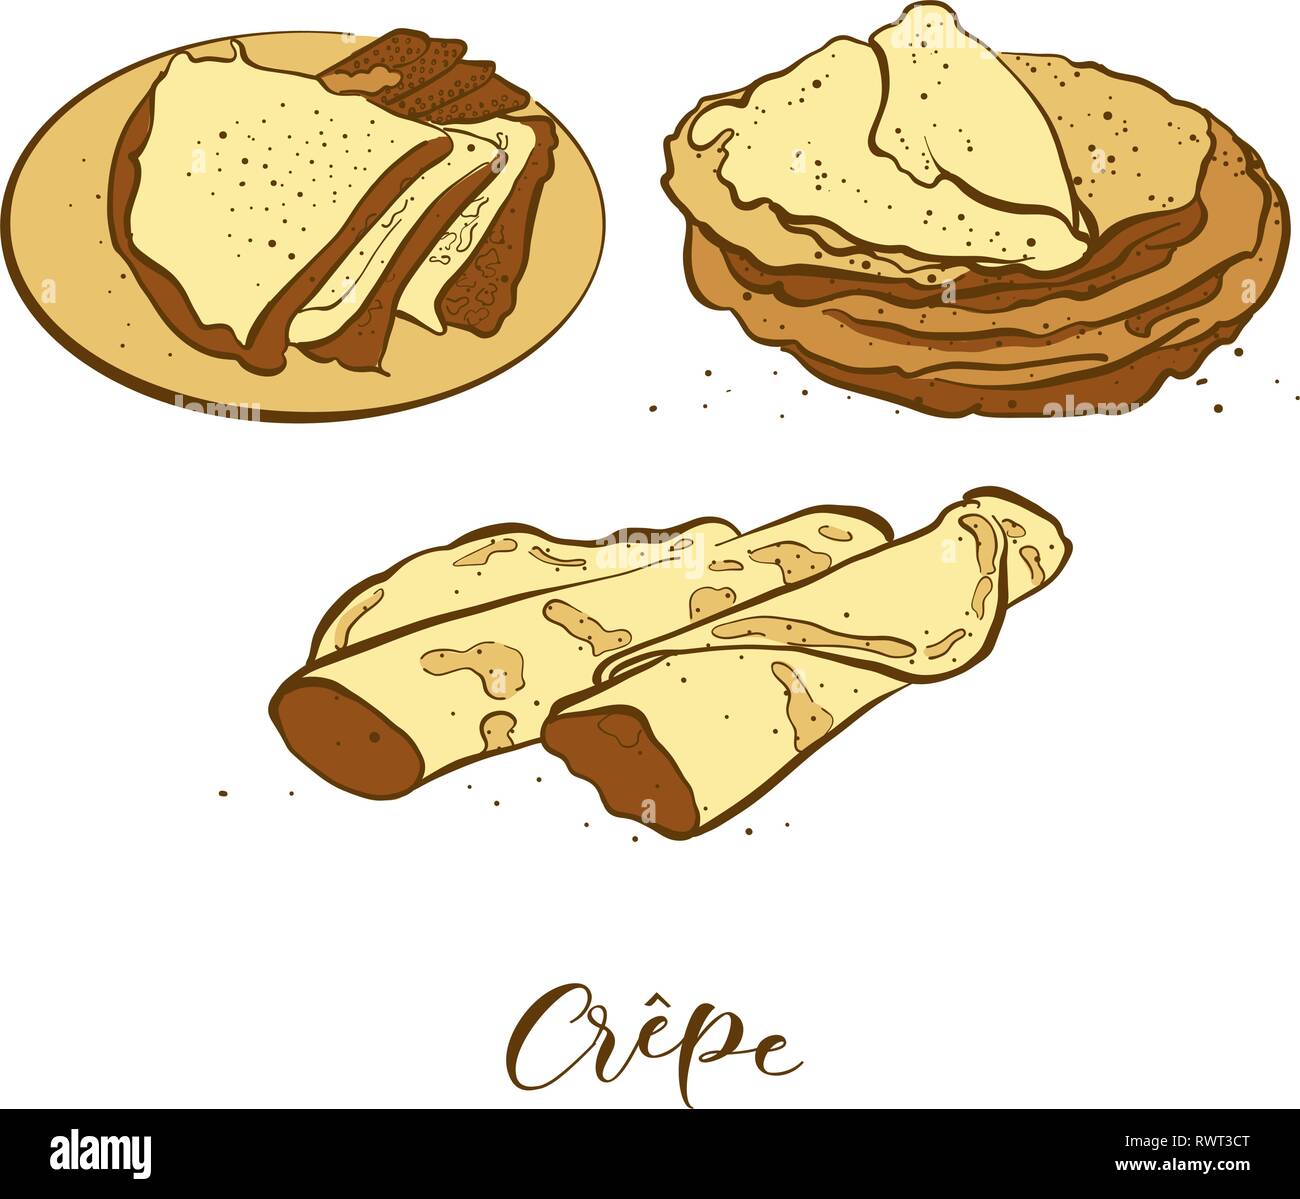 Farbige Skizzen der Crêpe-Brot. Vektor Zeichnung der Pfannkuchen essen, in der Regel in Frankreich bekannt. Farbige Brot Abbildung Serie. Stock Vektor